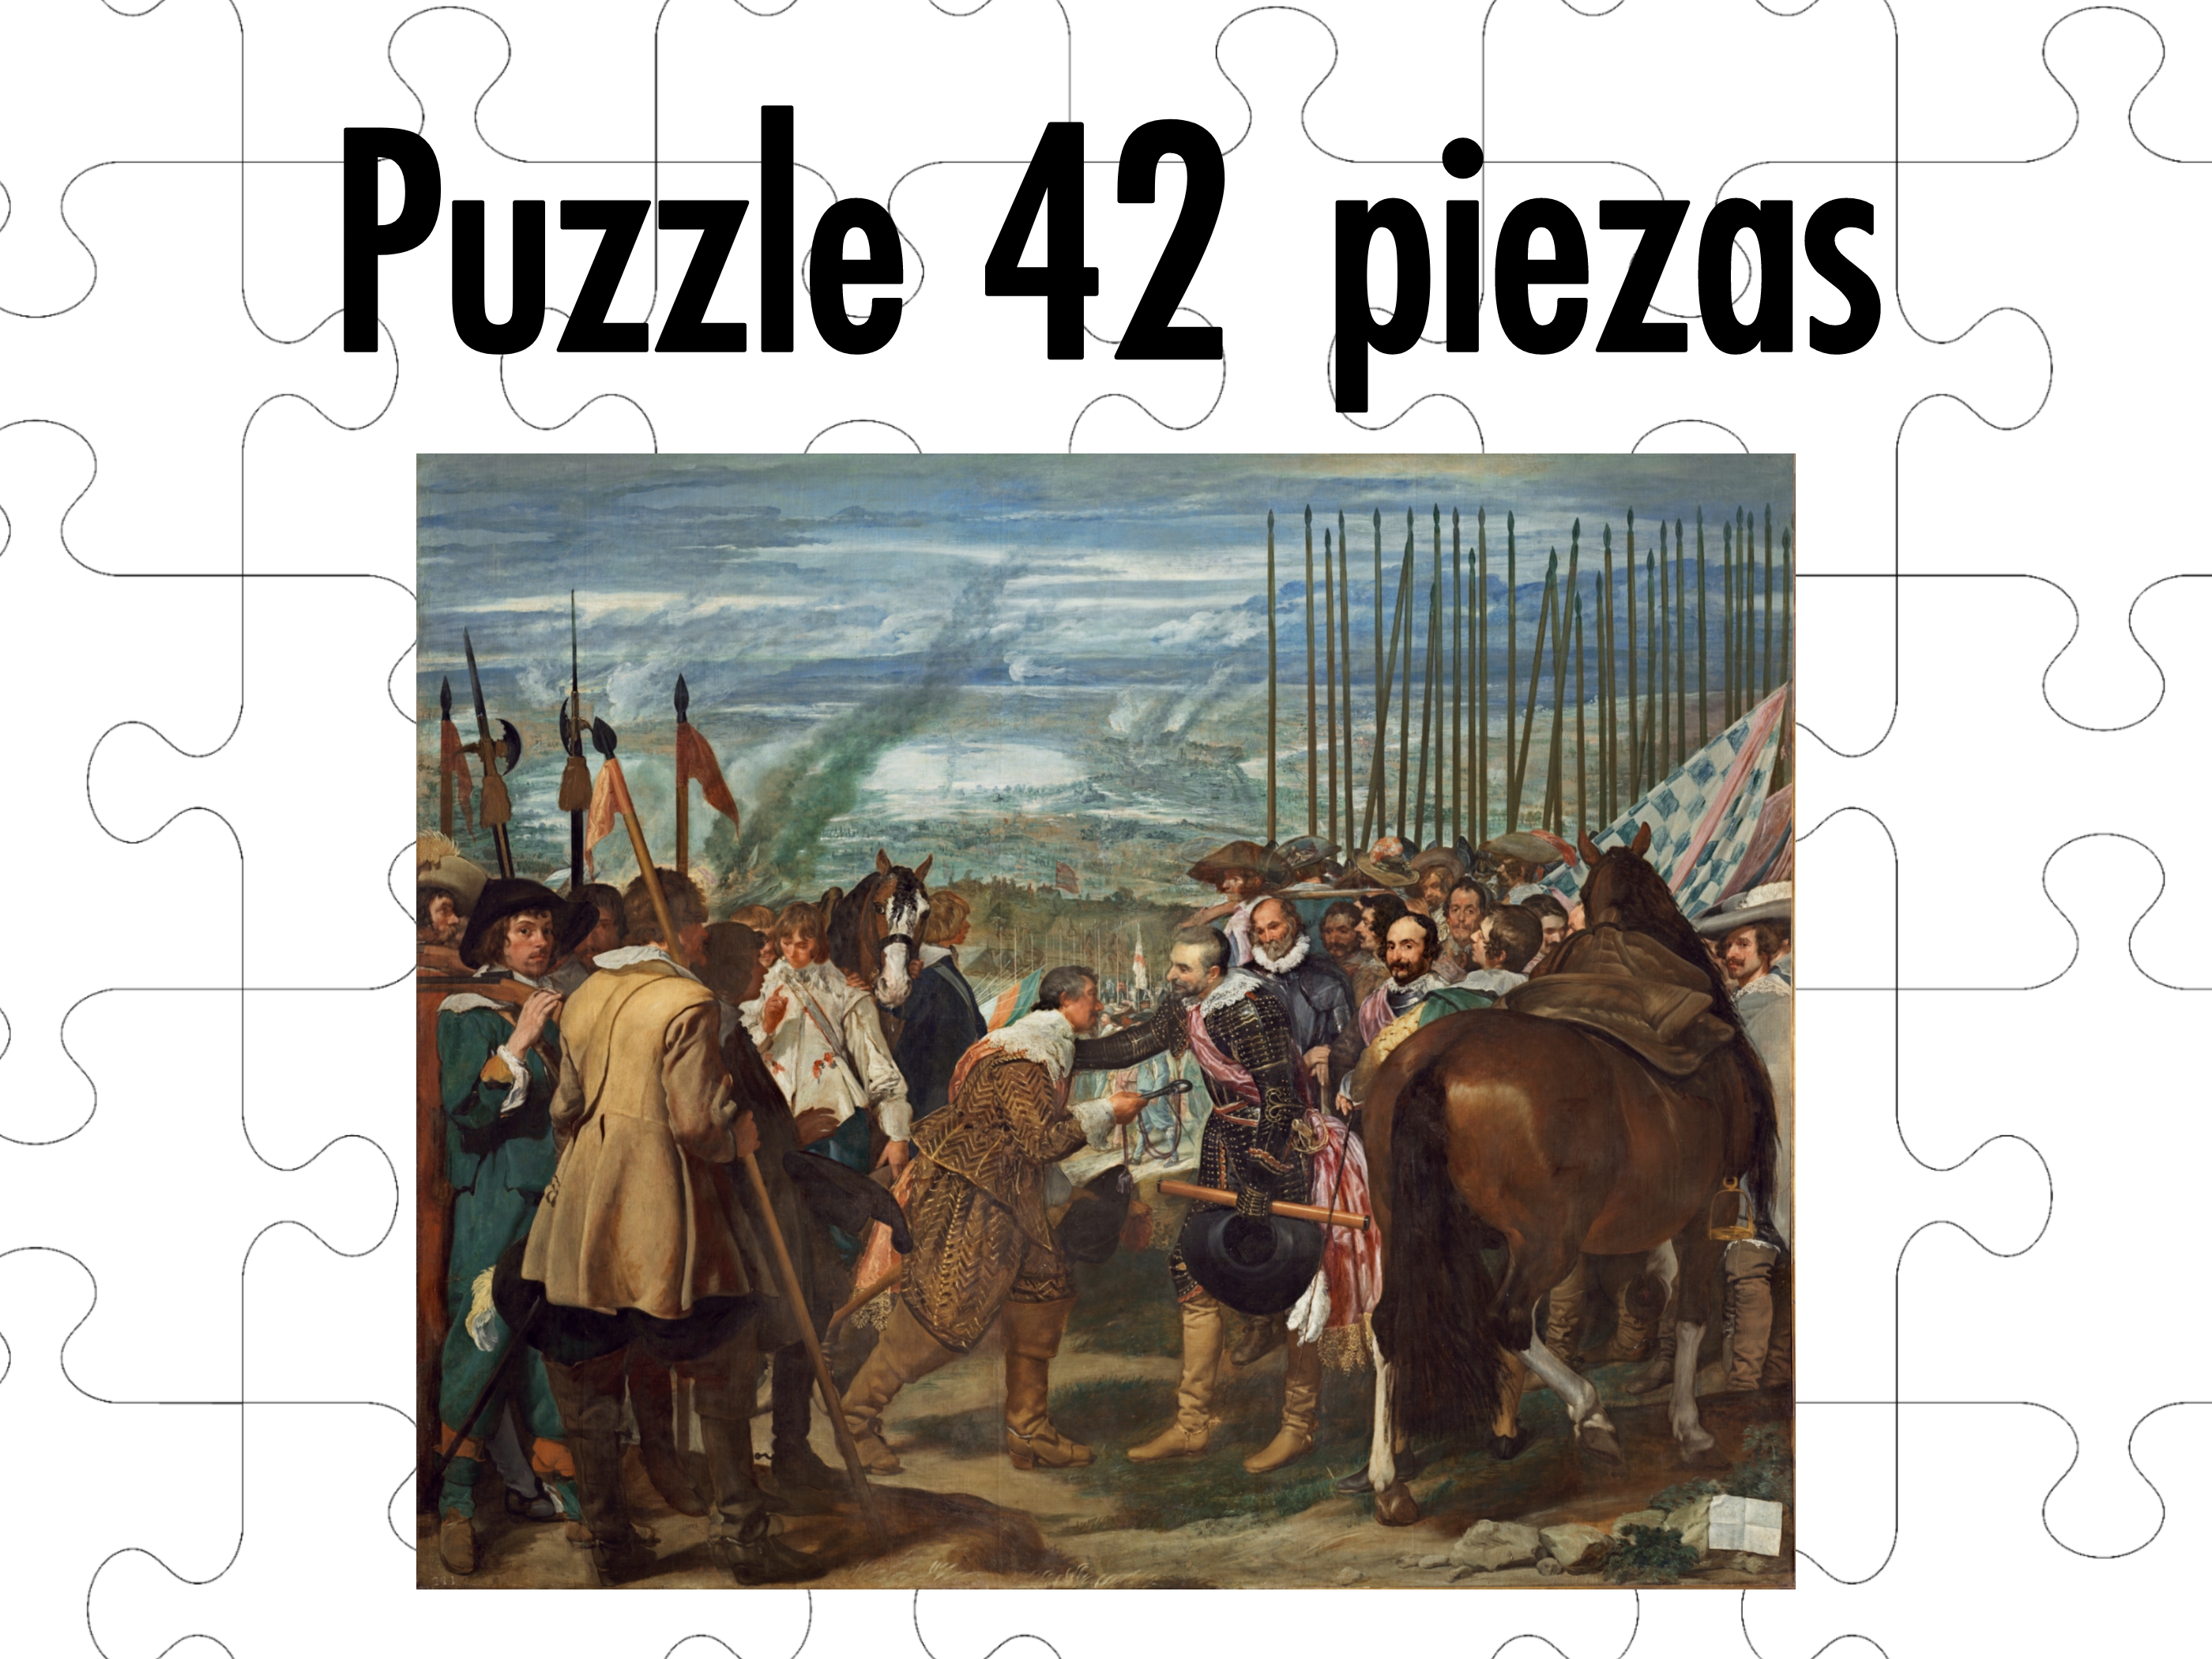 ¿Cuánto tardas en hacer este puzzle?